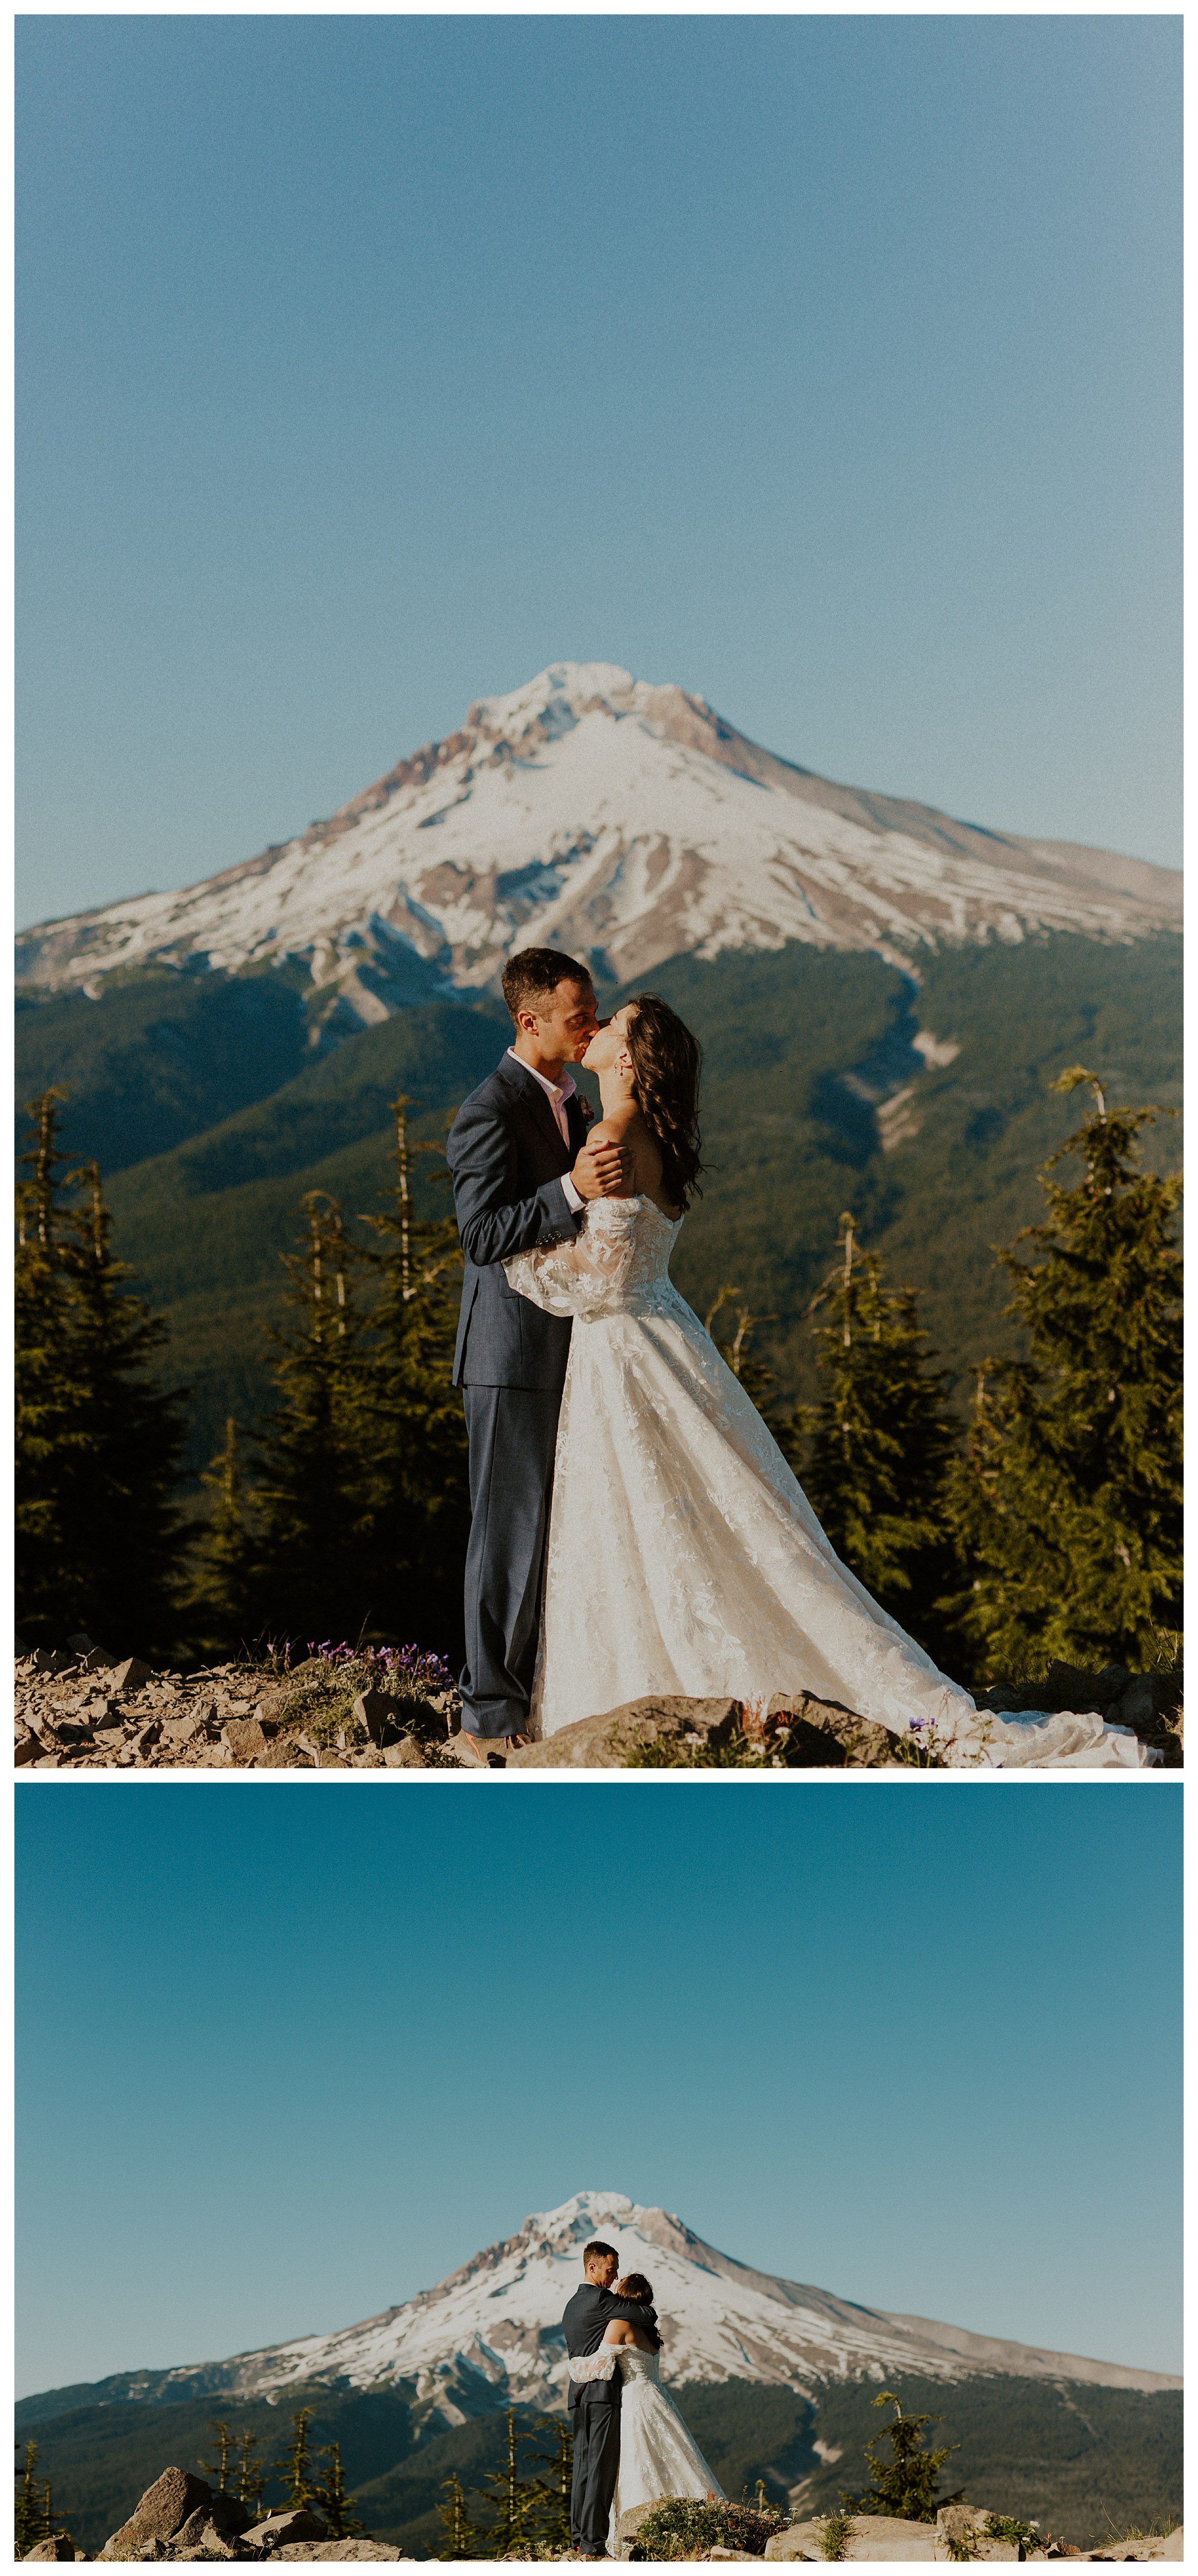 bride and groom kissing mount hood landscape

